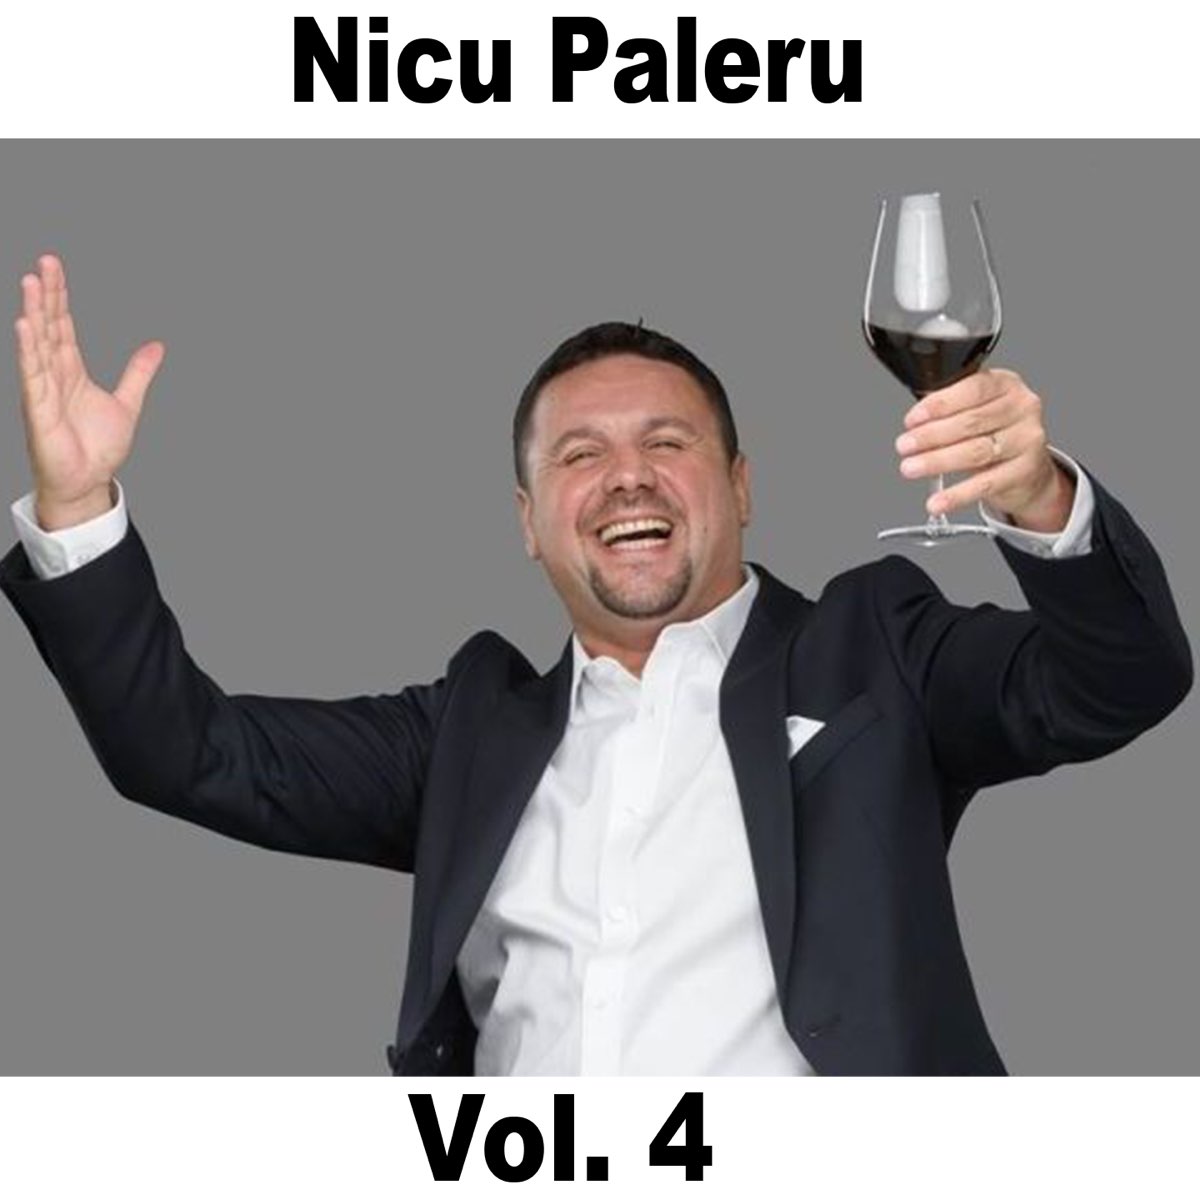 ‎Nicu Paleru Best Hits, Vol. 4 by Nicu Paleru on Apple Music